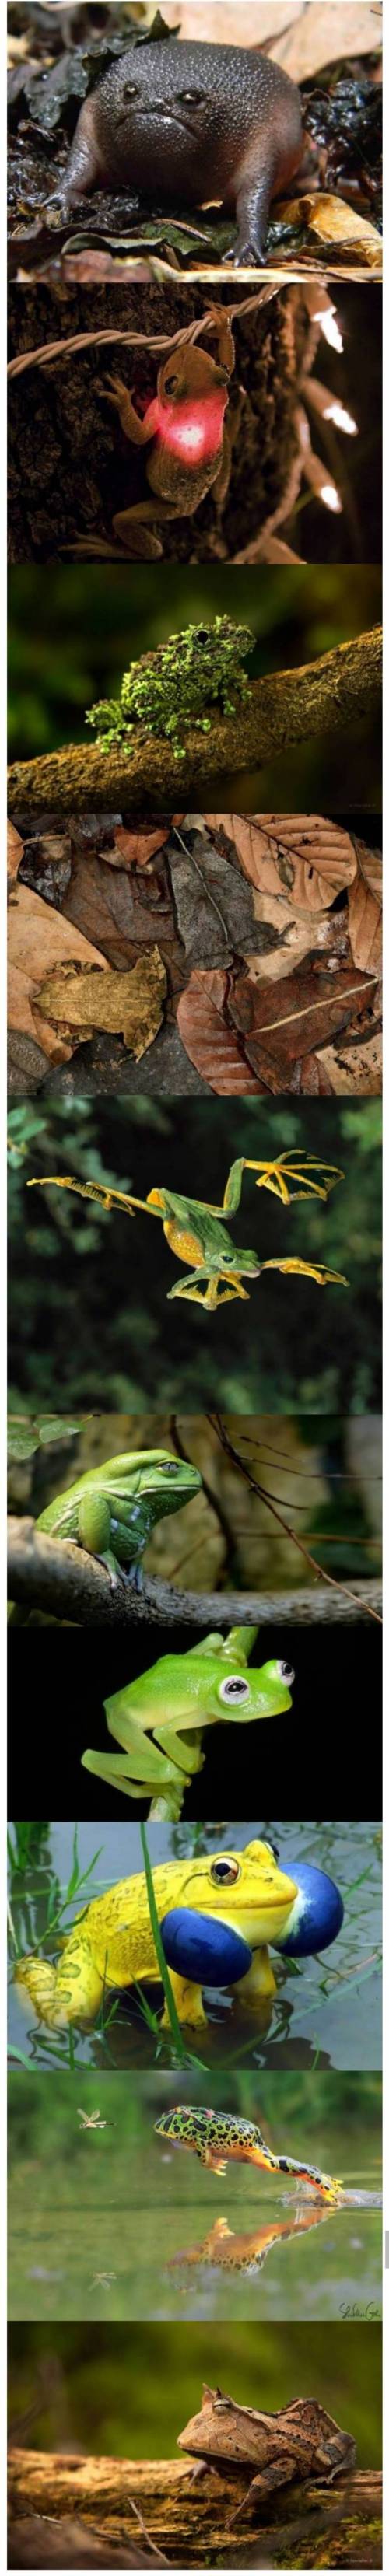 개구리의 다양한 얼굴.jpg